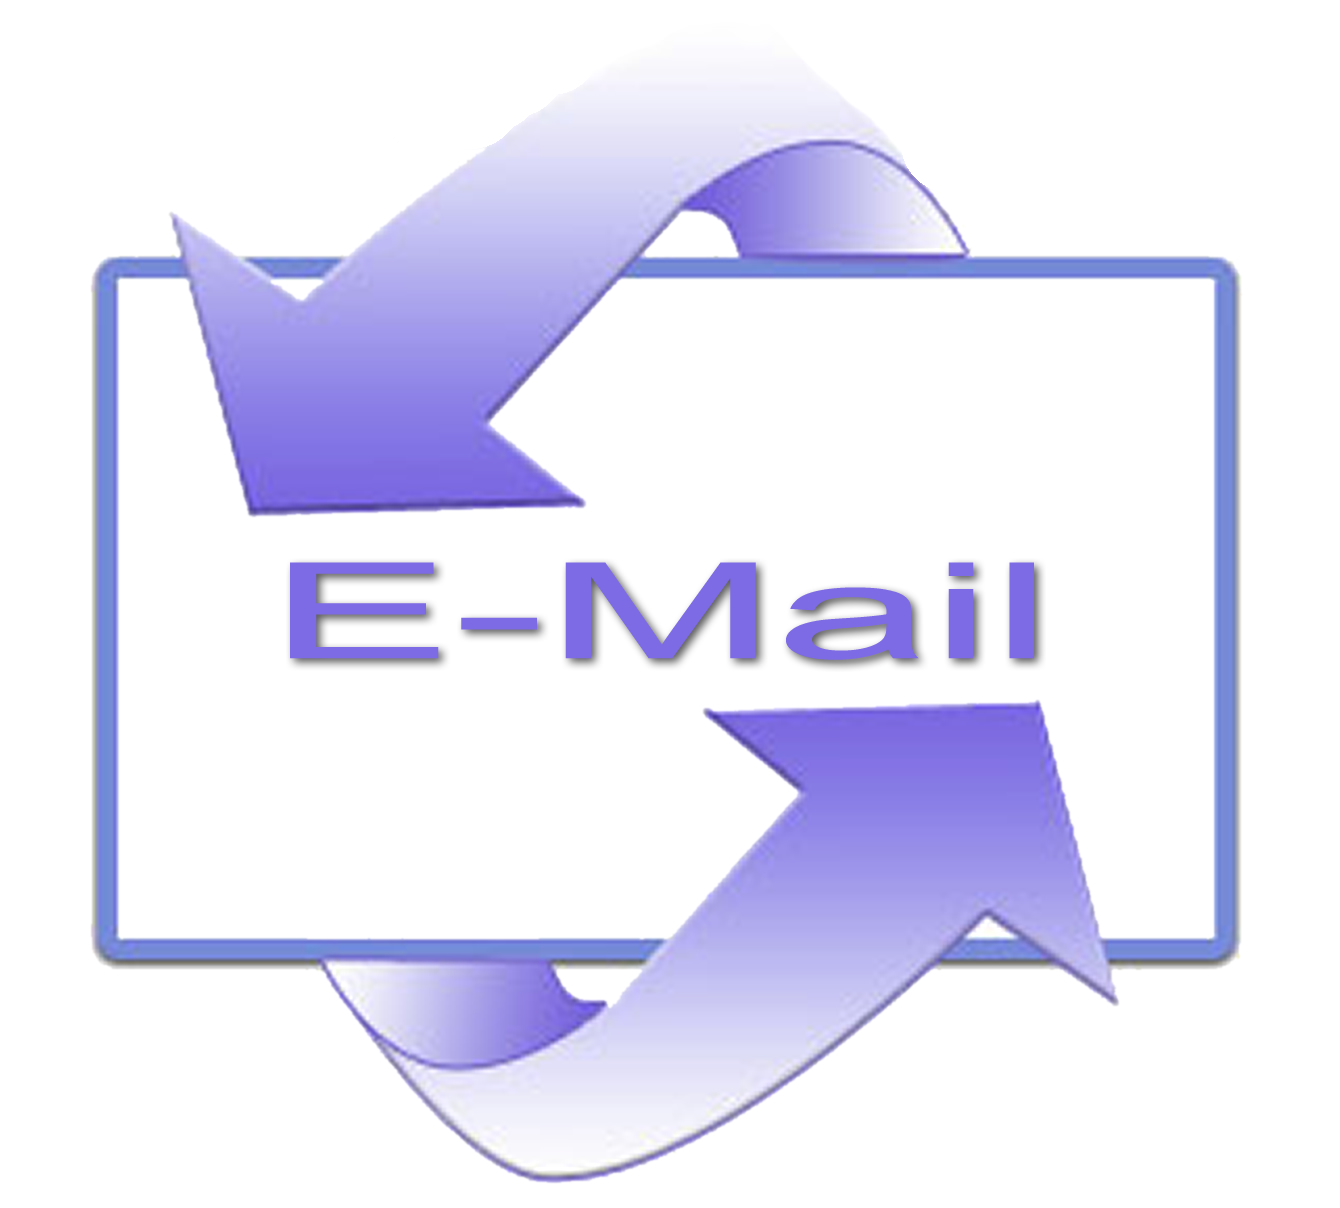 Thủ thuật sử dụng email: Hướng dẫn cách thu hồi email đã gửi trong Outlook và Gmail